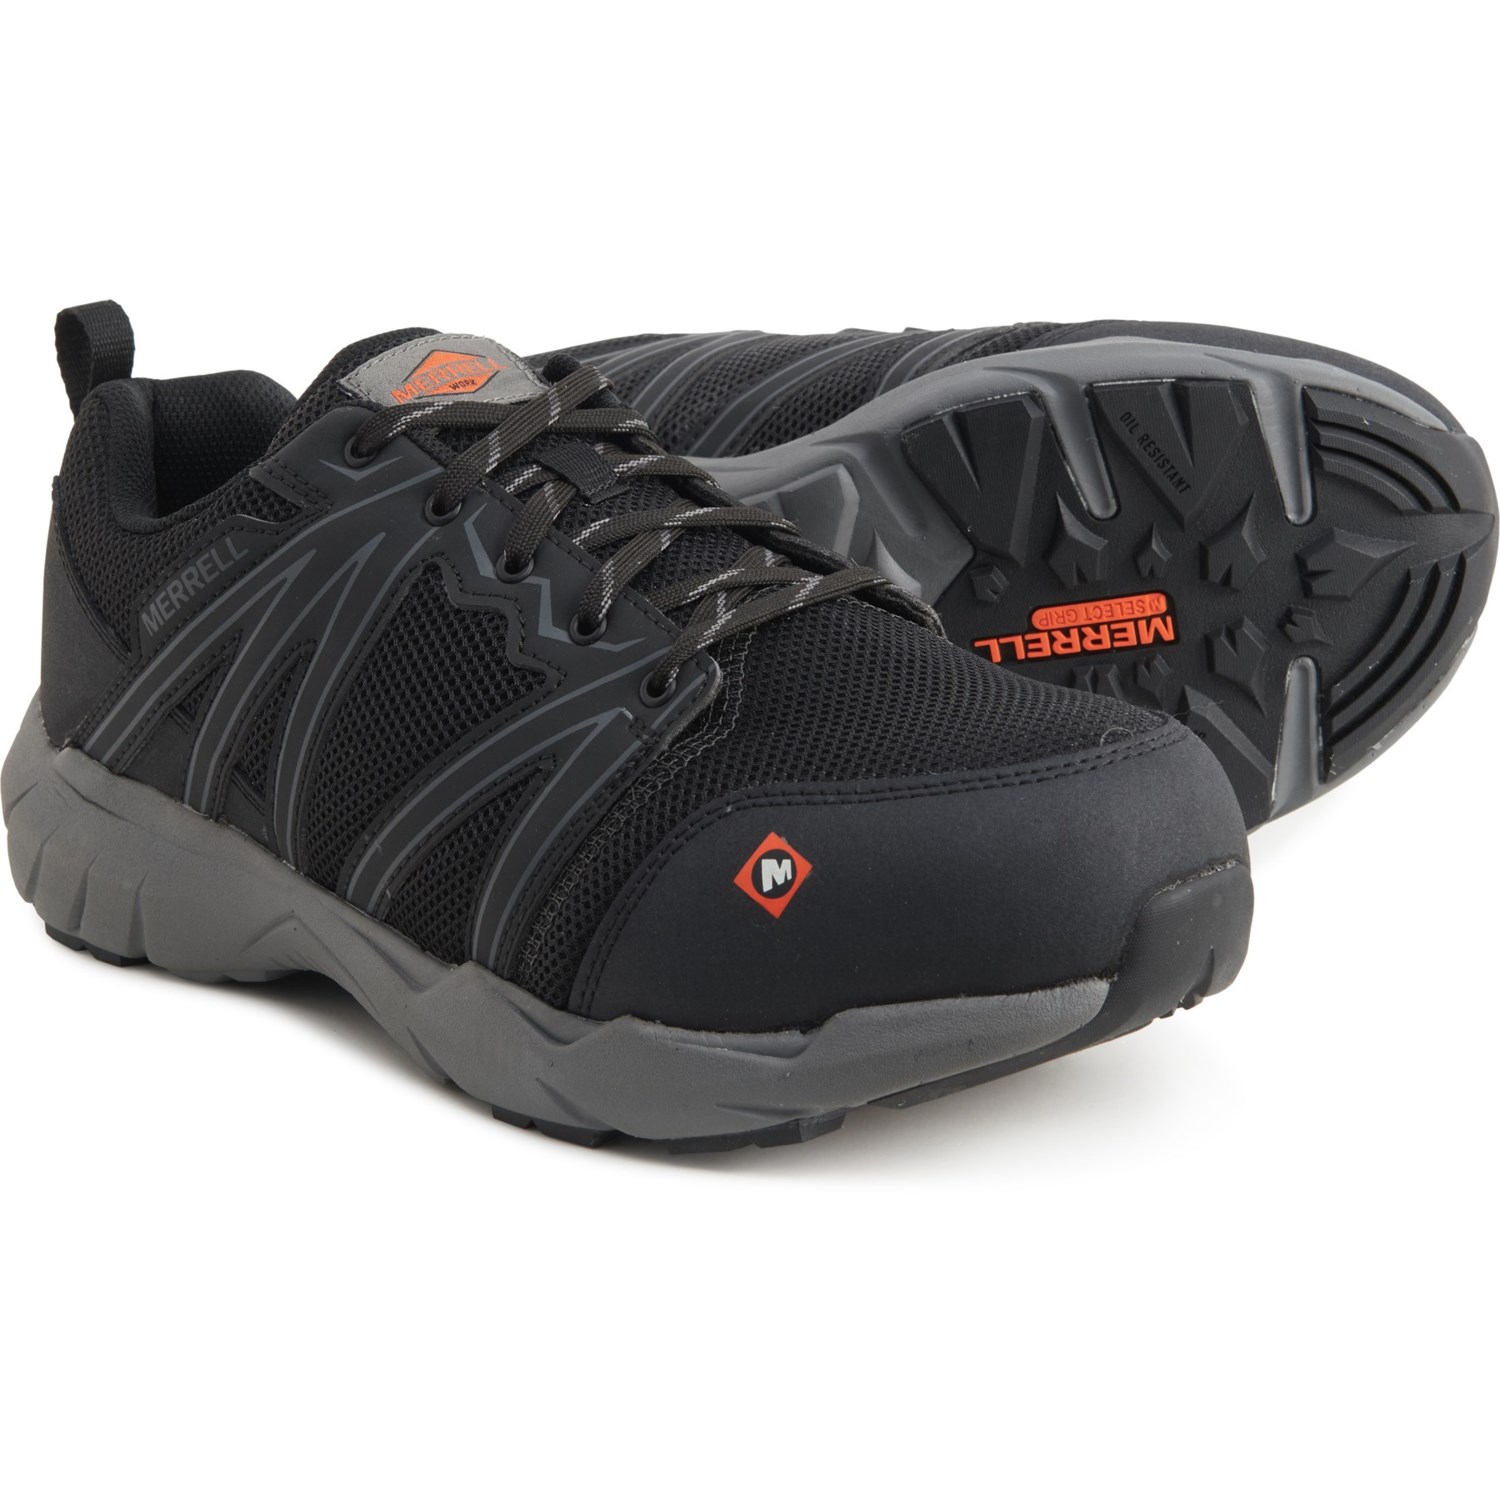 Merrell Fullbench Superlite Work Shoes (For Men) - Save 37%